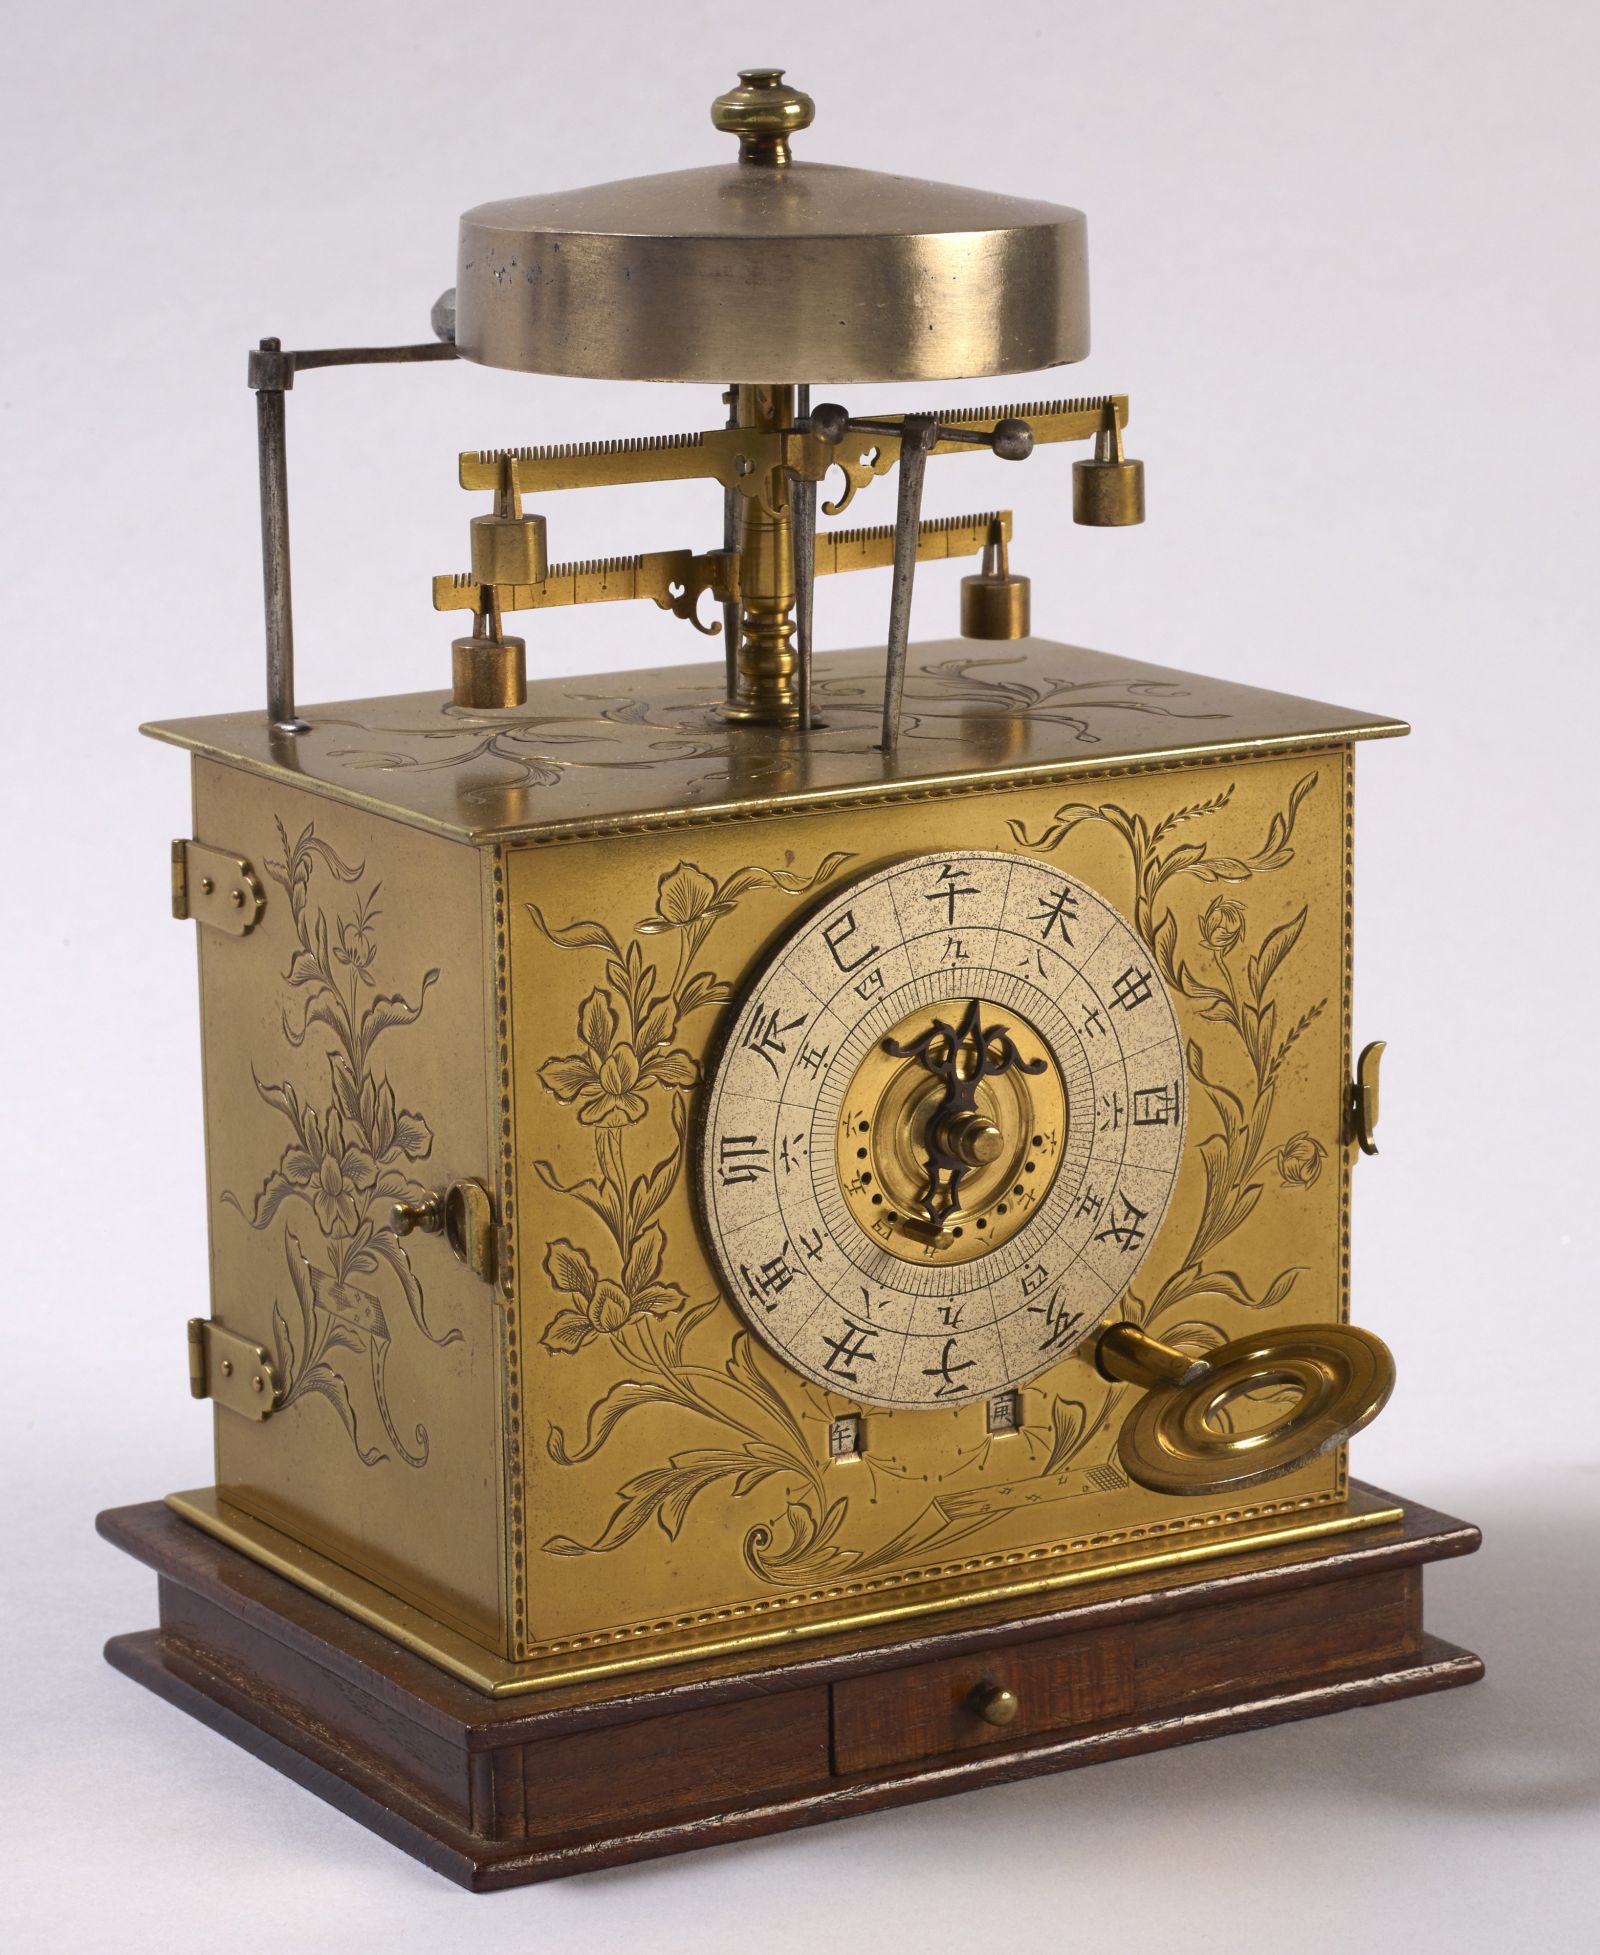 Horloge portative japonaise à heures inégales, Début du XIXe siècle, Musée des Arts et Métiers-Cnam, © Musée des Arts et Métiers-Cnam/photo Pierre Ballif